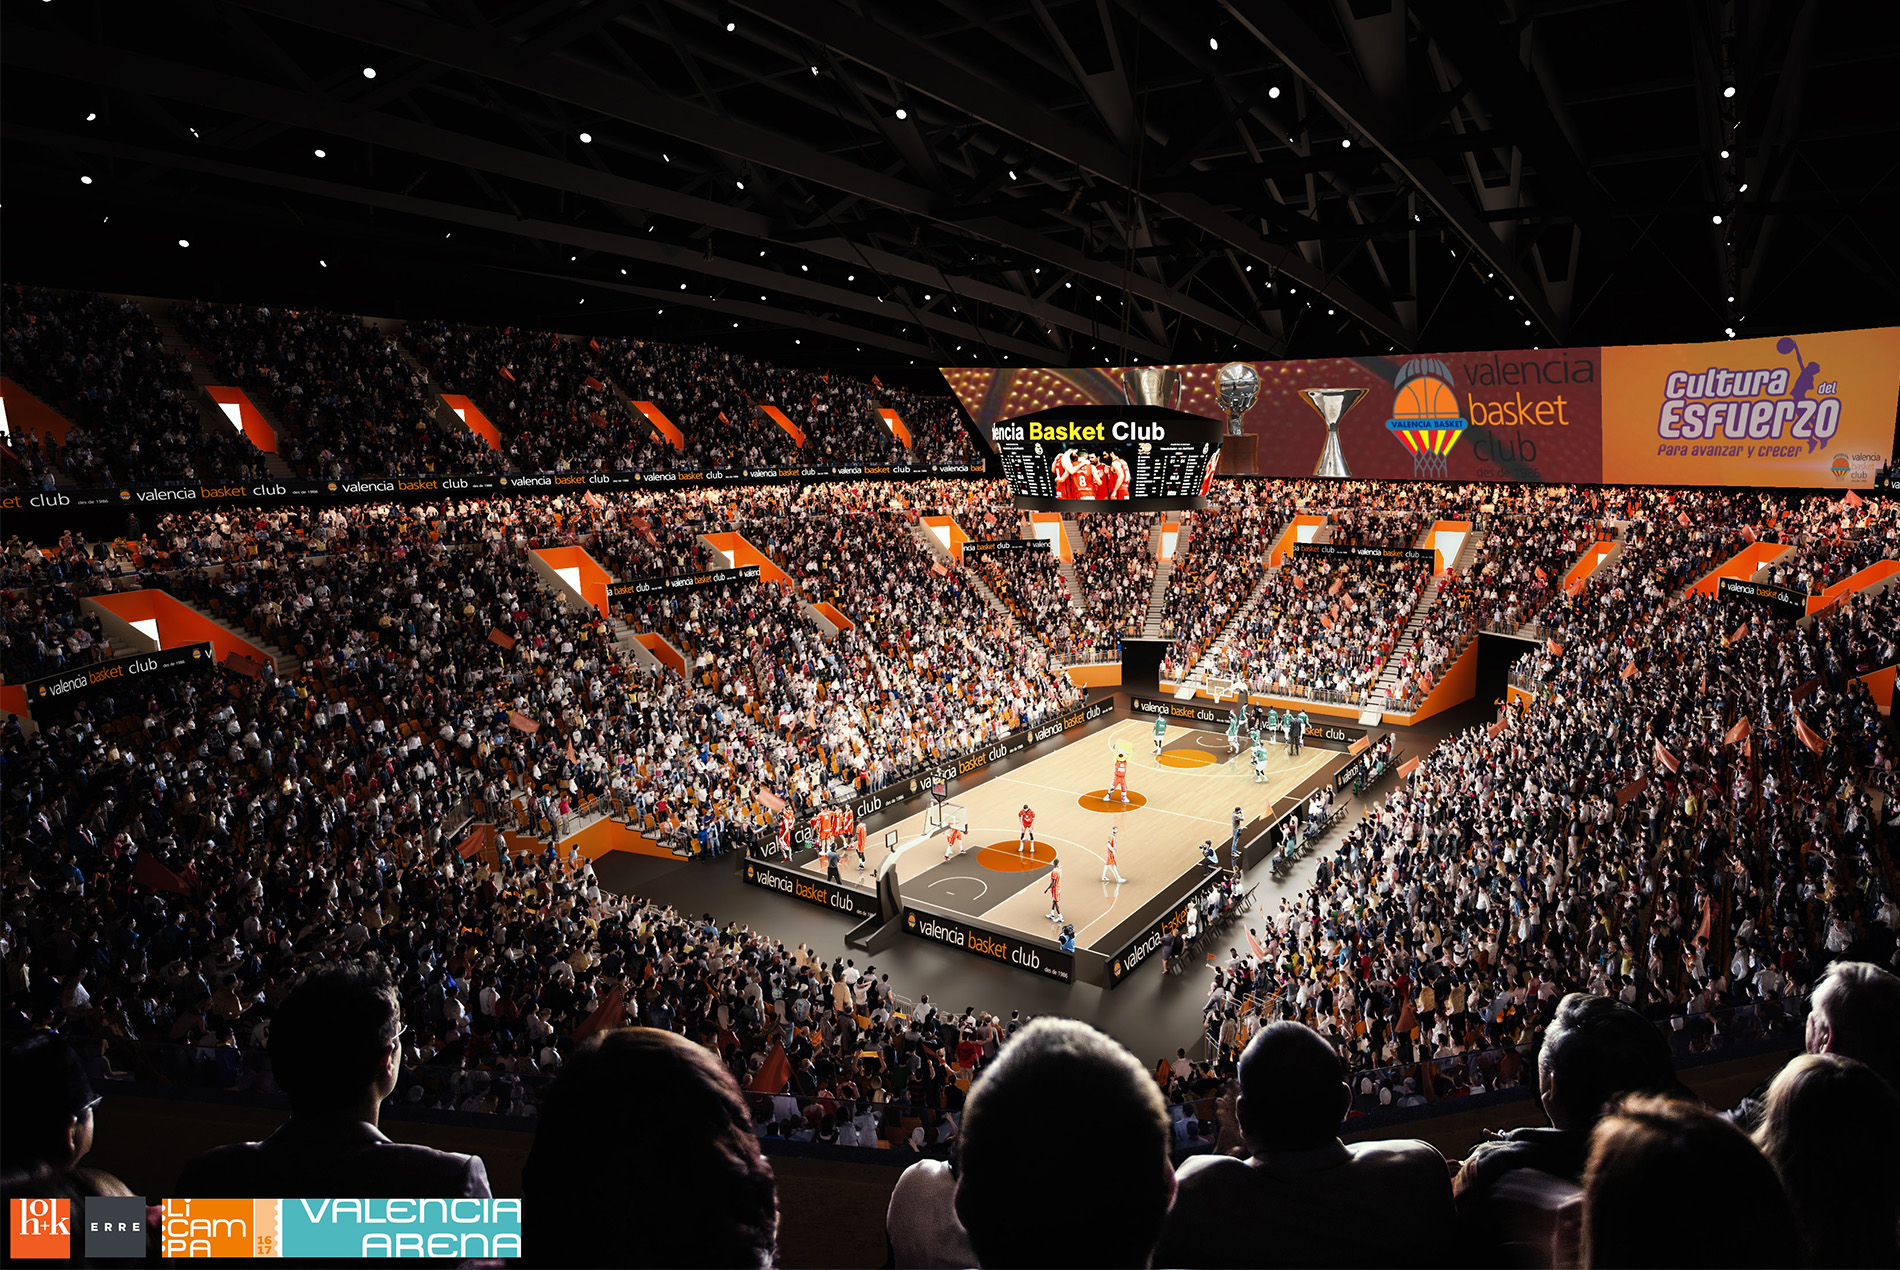 设备先进的 Roig Arena，是欧洲最顶尖的篮球运动中心。